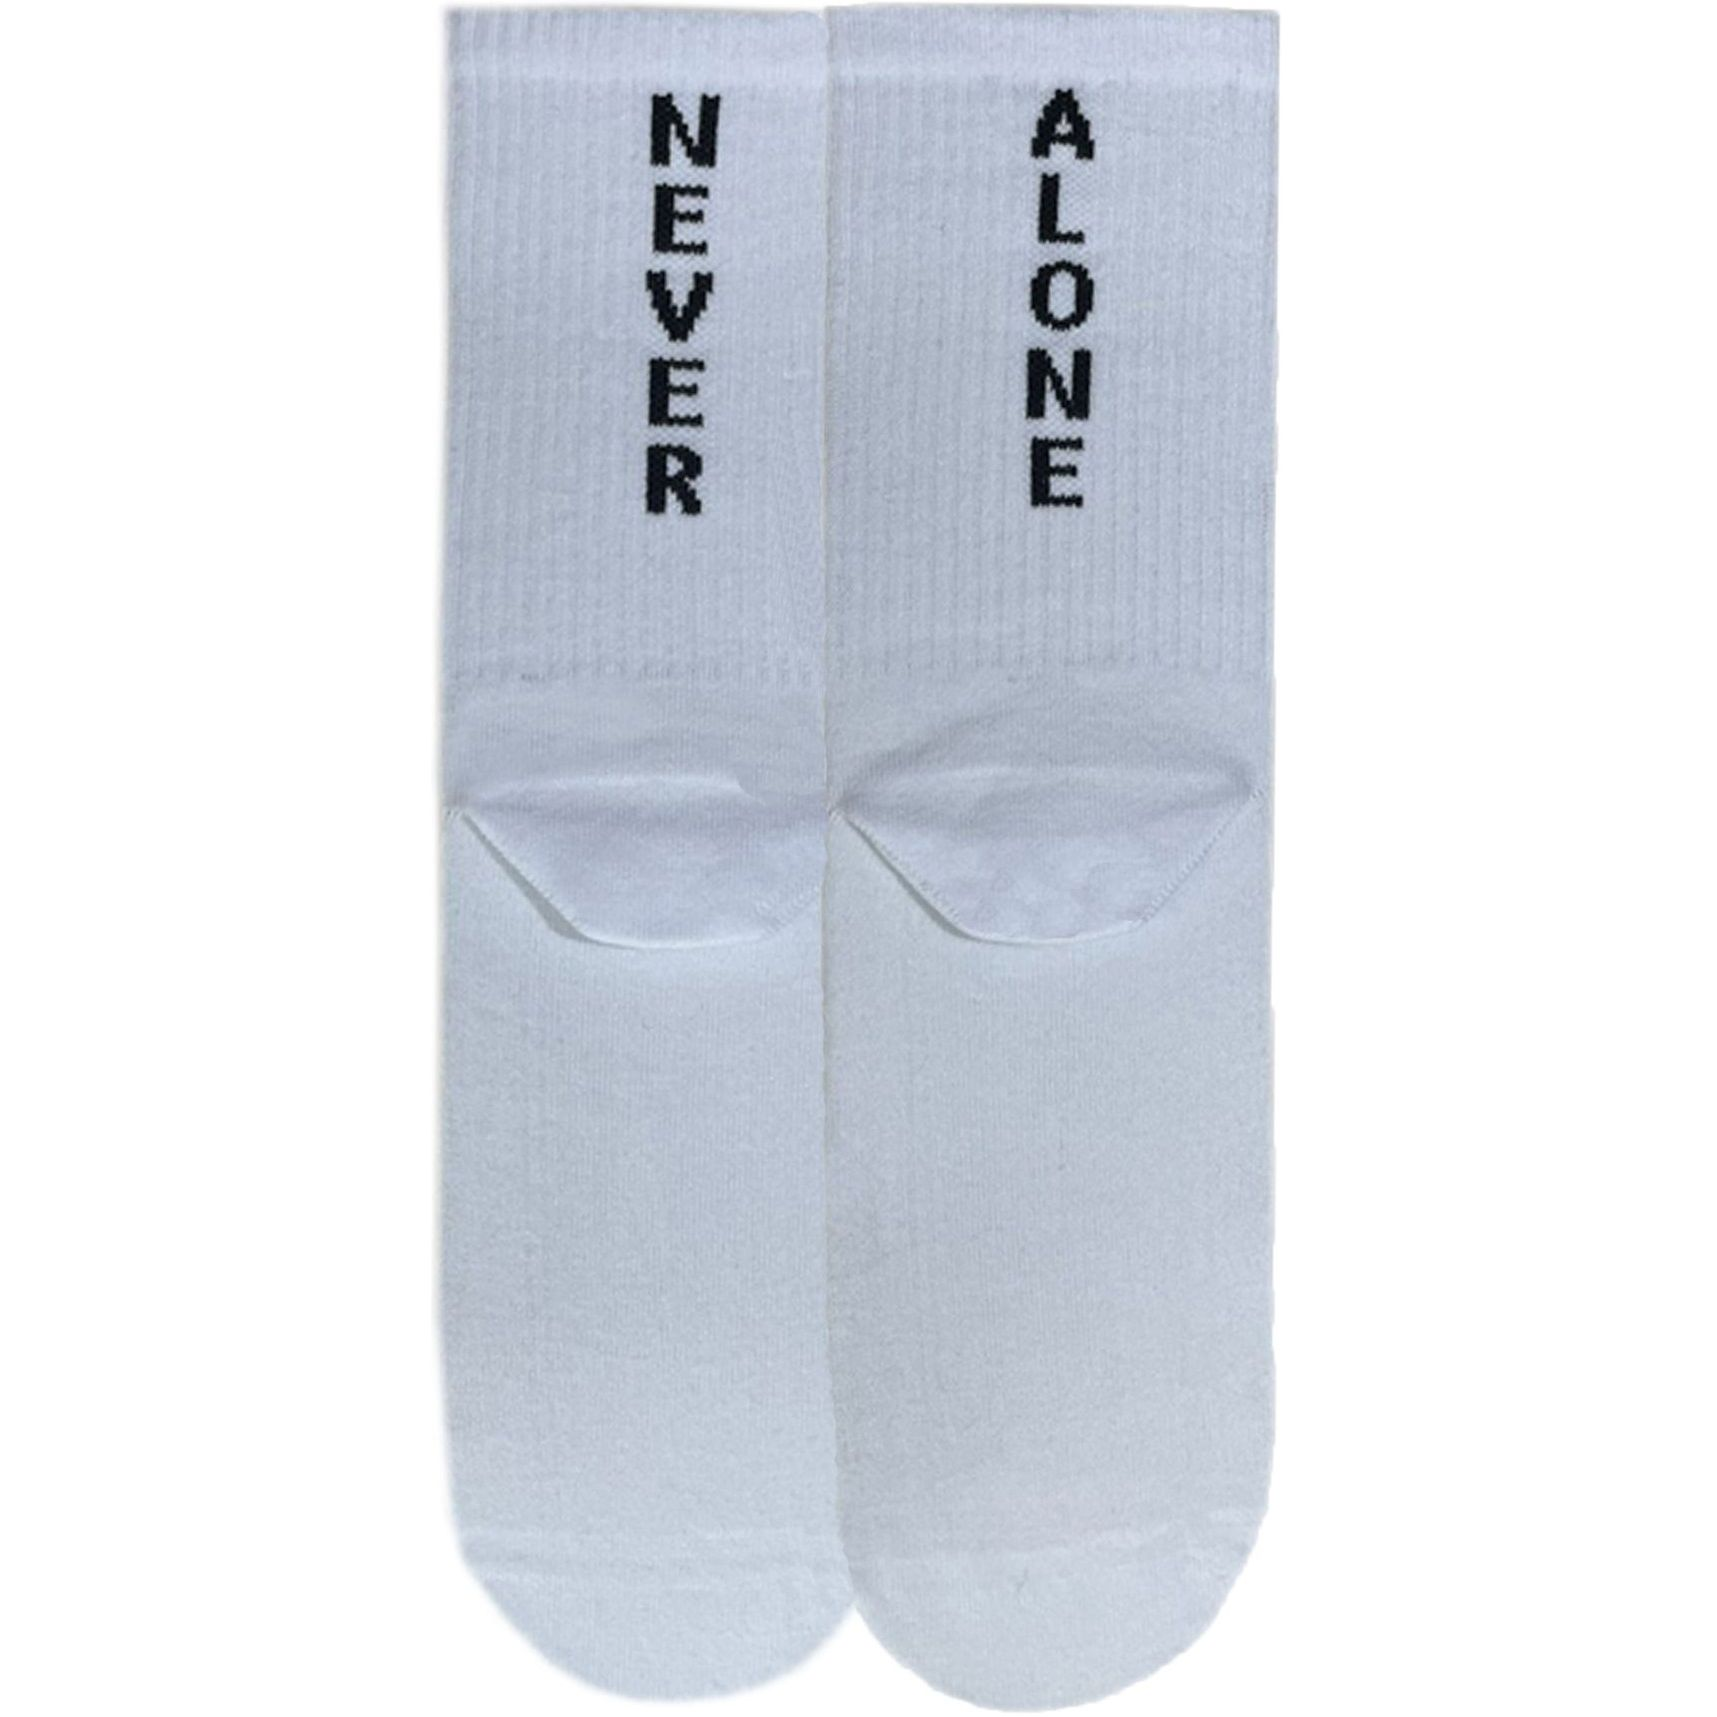 Шкарпетки чоловічі Premier Socks 40-41 1 пара білі з принтом (4820163317915)фото1